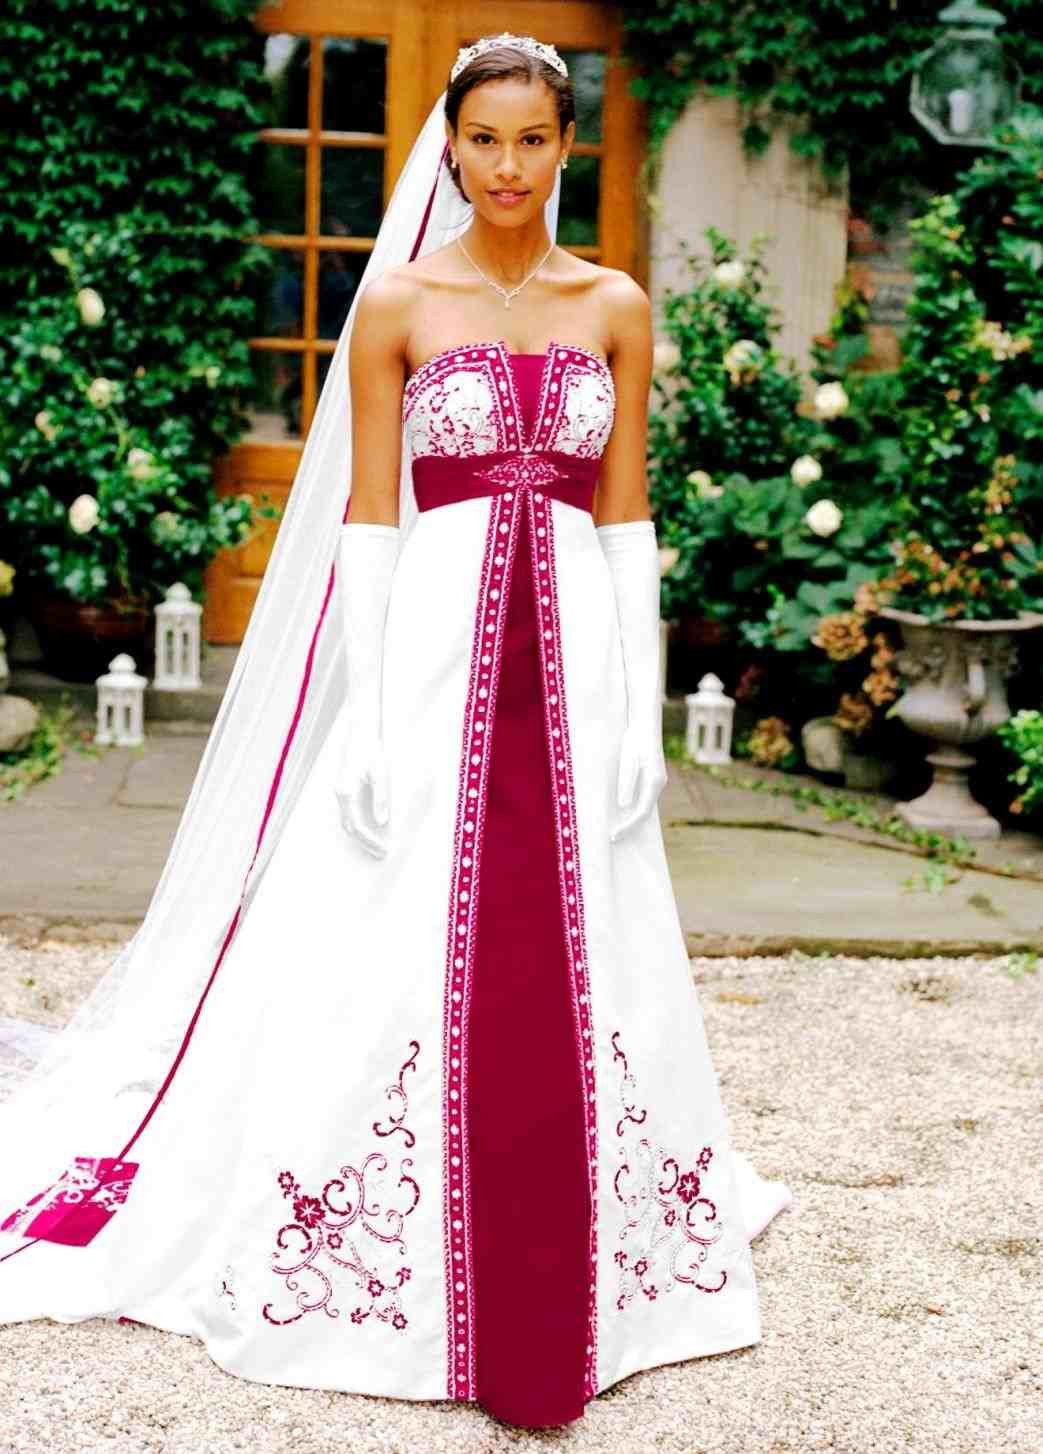 Unique Wedding Gowns With Color
 dress unique wedding dresses with color in striking s shop